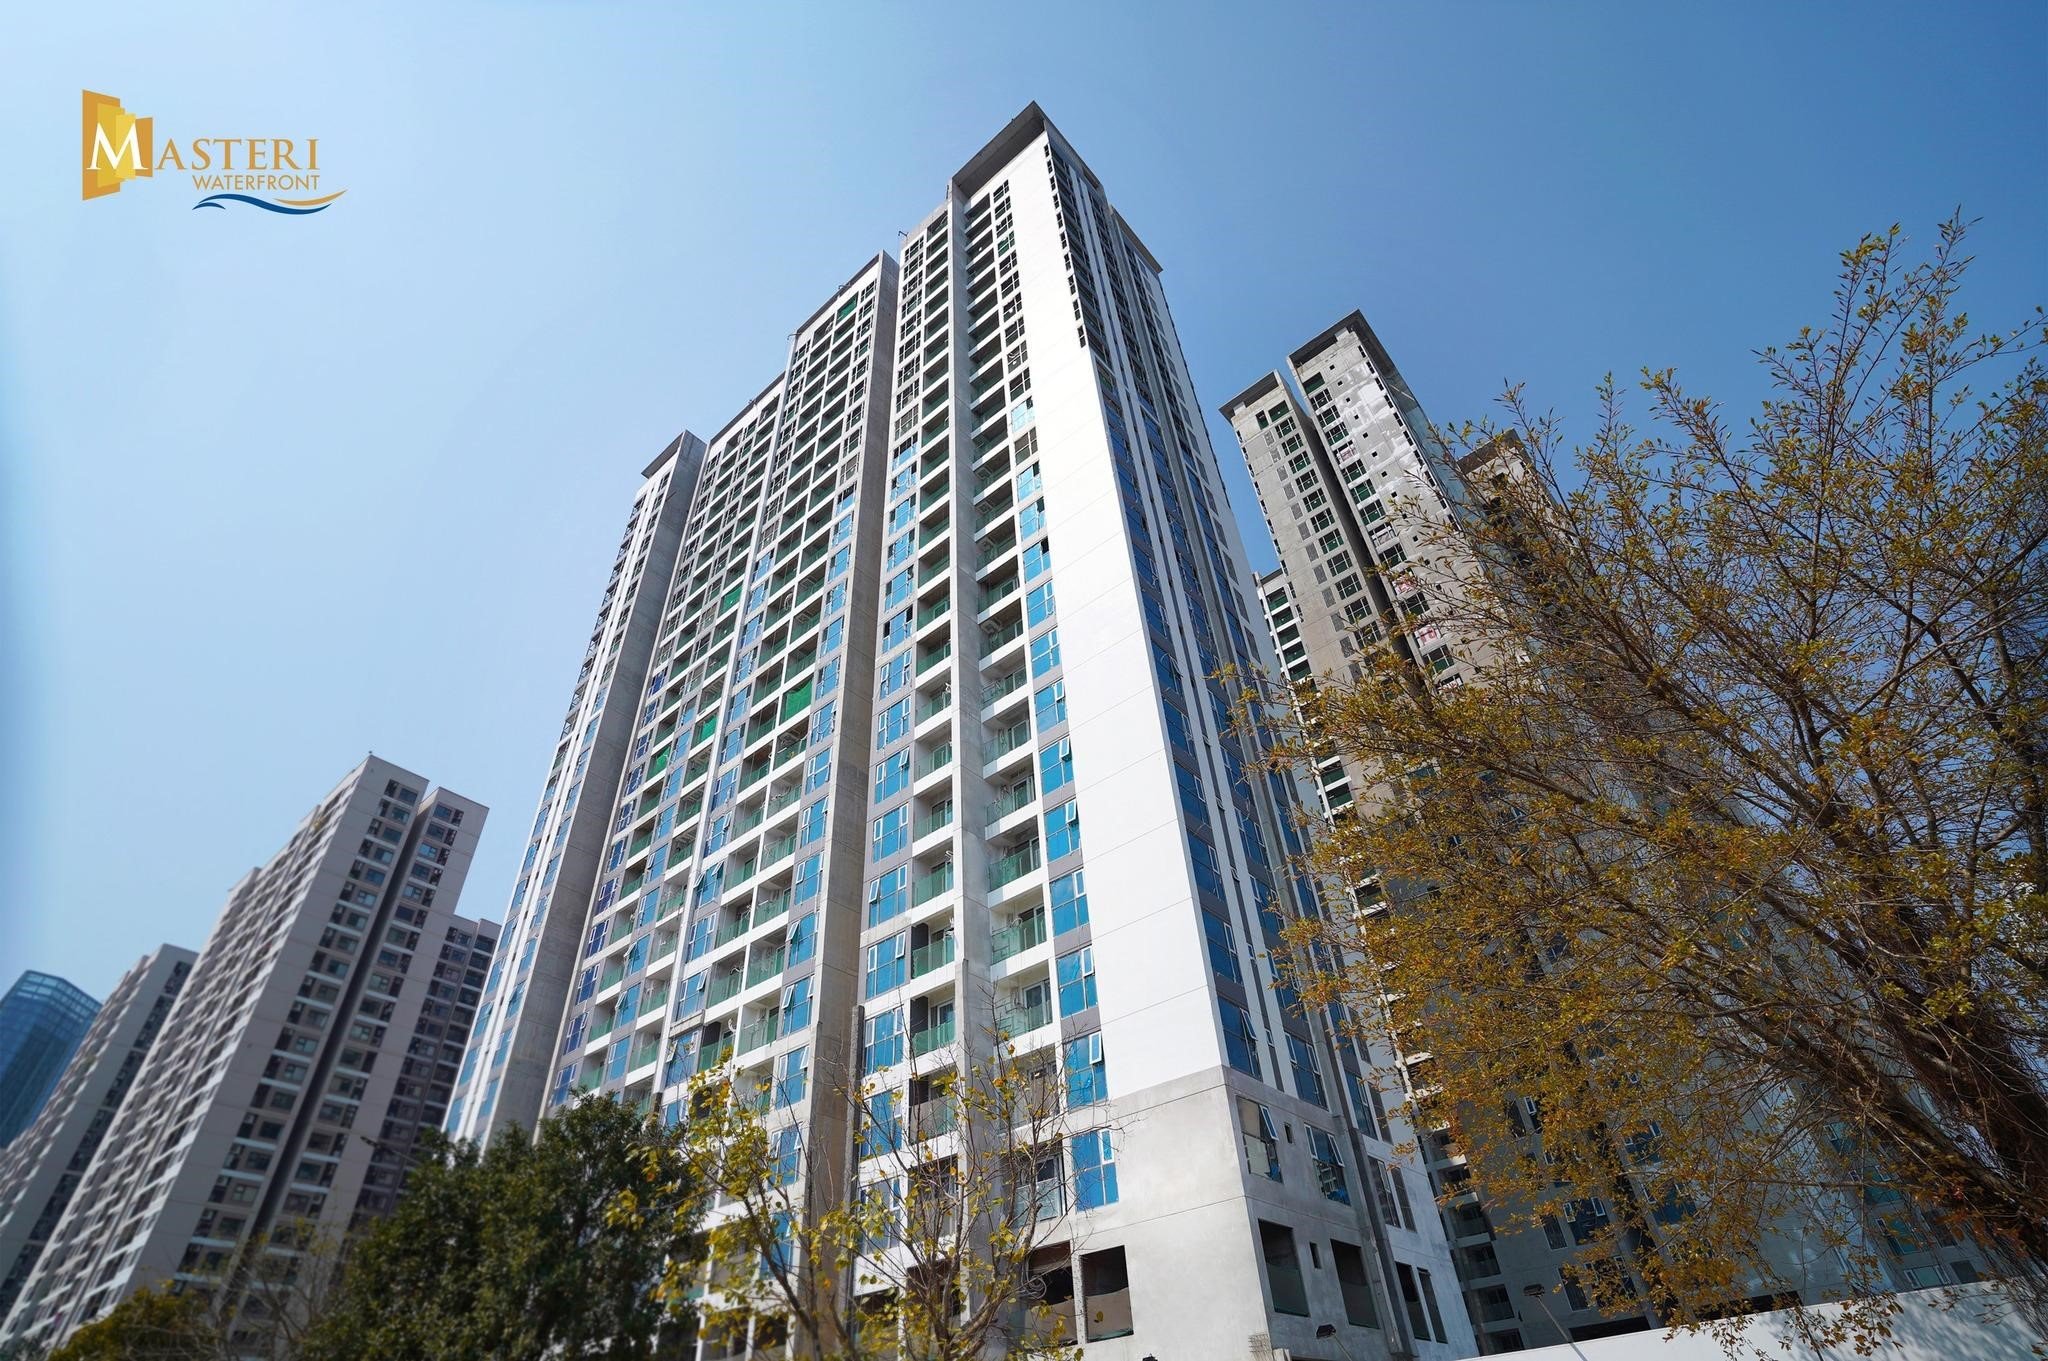 huong-dan-di-chuyen-tu-masteri-west-heights-den-masteri-waterfront-onehousing-4